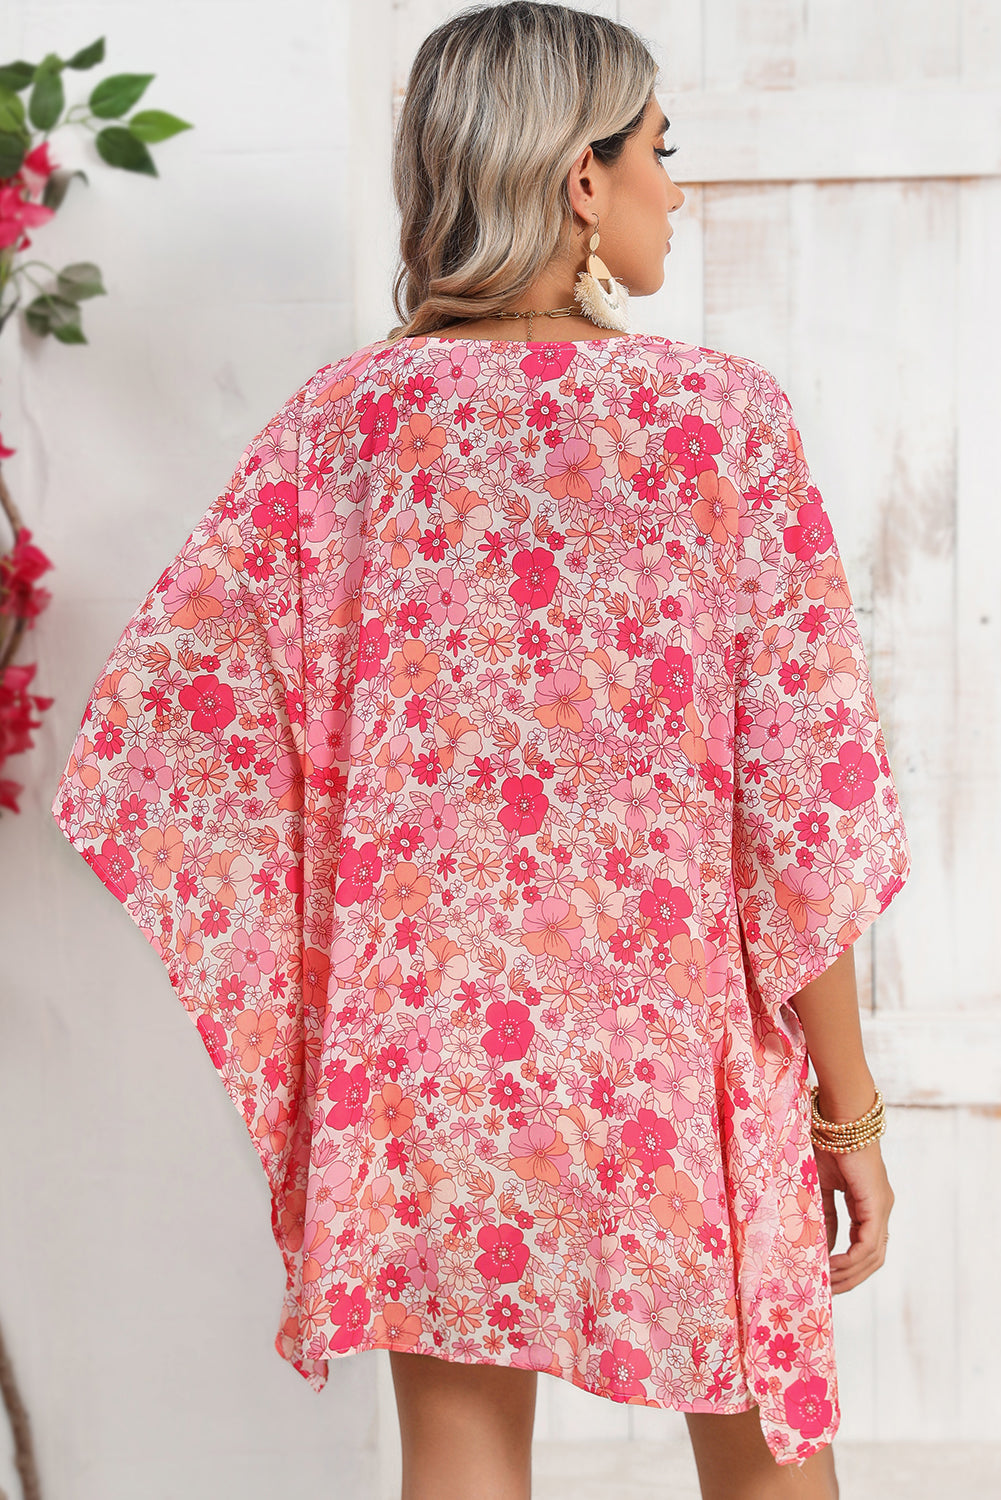 Cherry Blossom Floral Blouse | Pink Boho V-Neck Oversized Women's Shirt